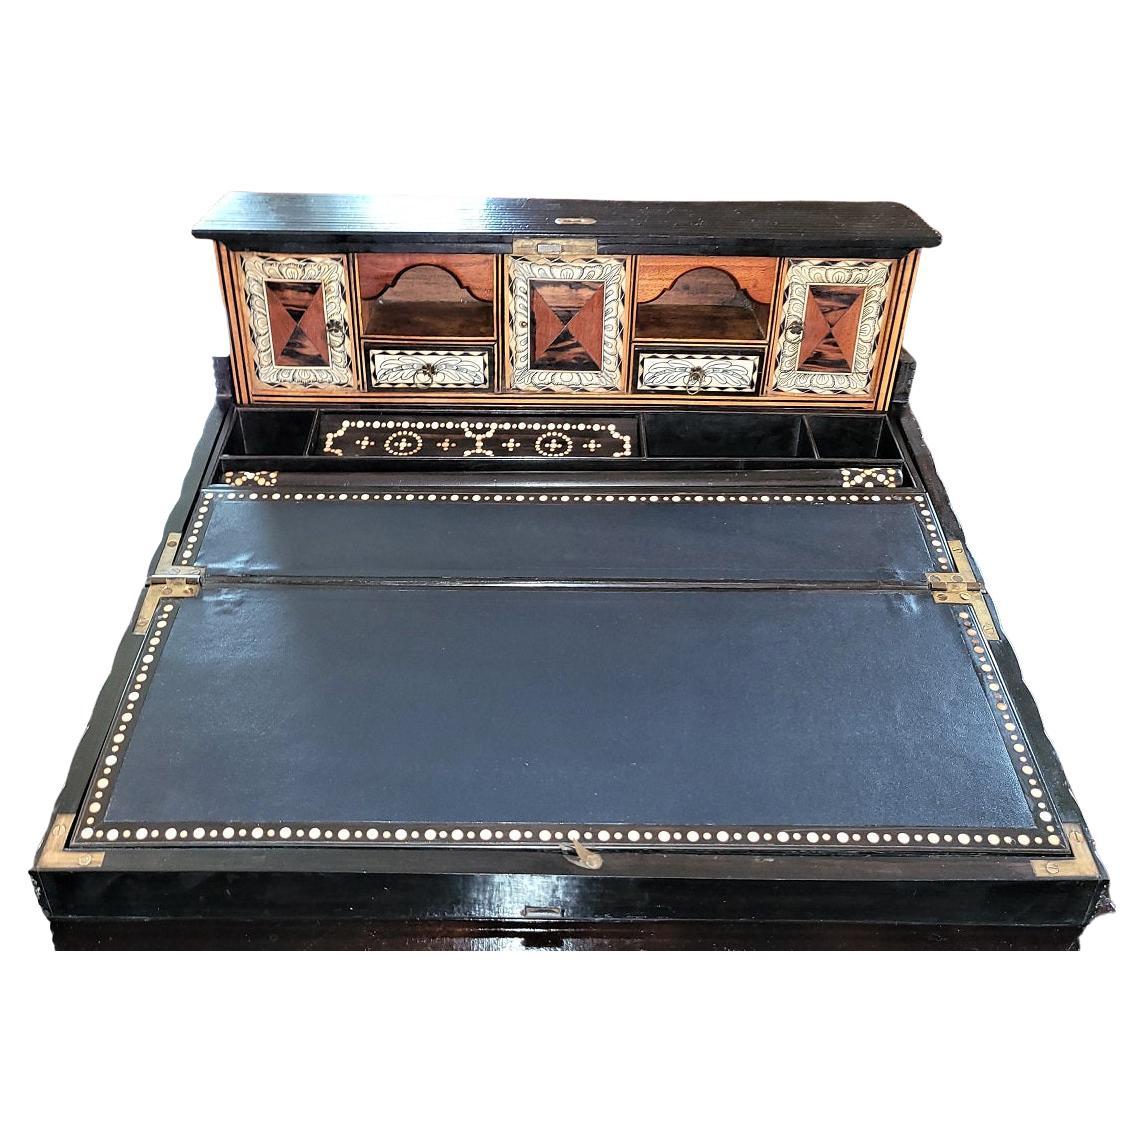 Anglo-Cylonesischer Lap-Schreibtisch in Museumsqualität aus dem 19. Jahrhundert